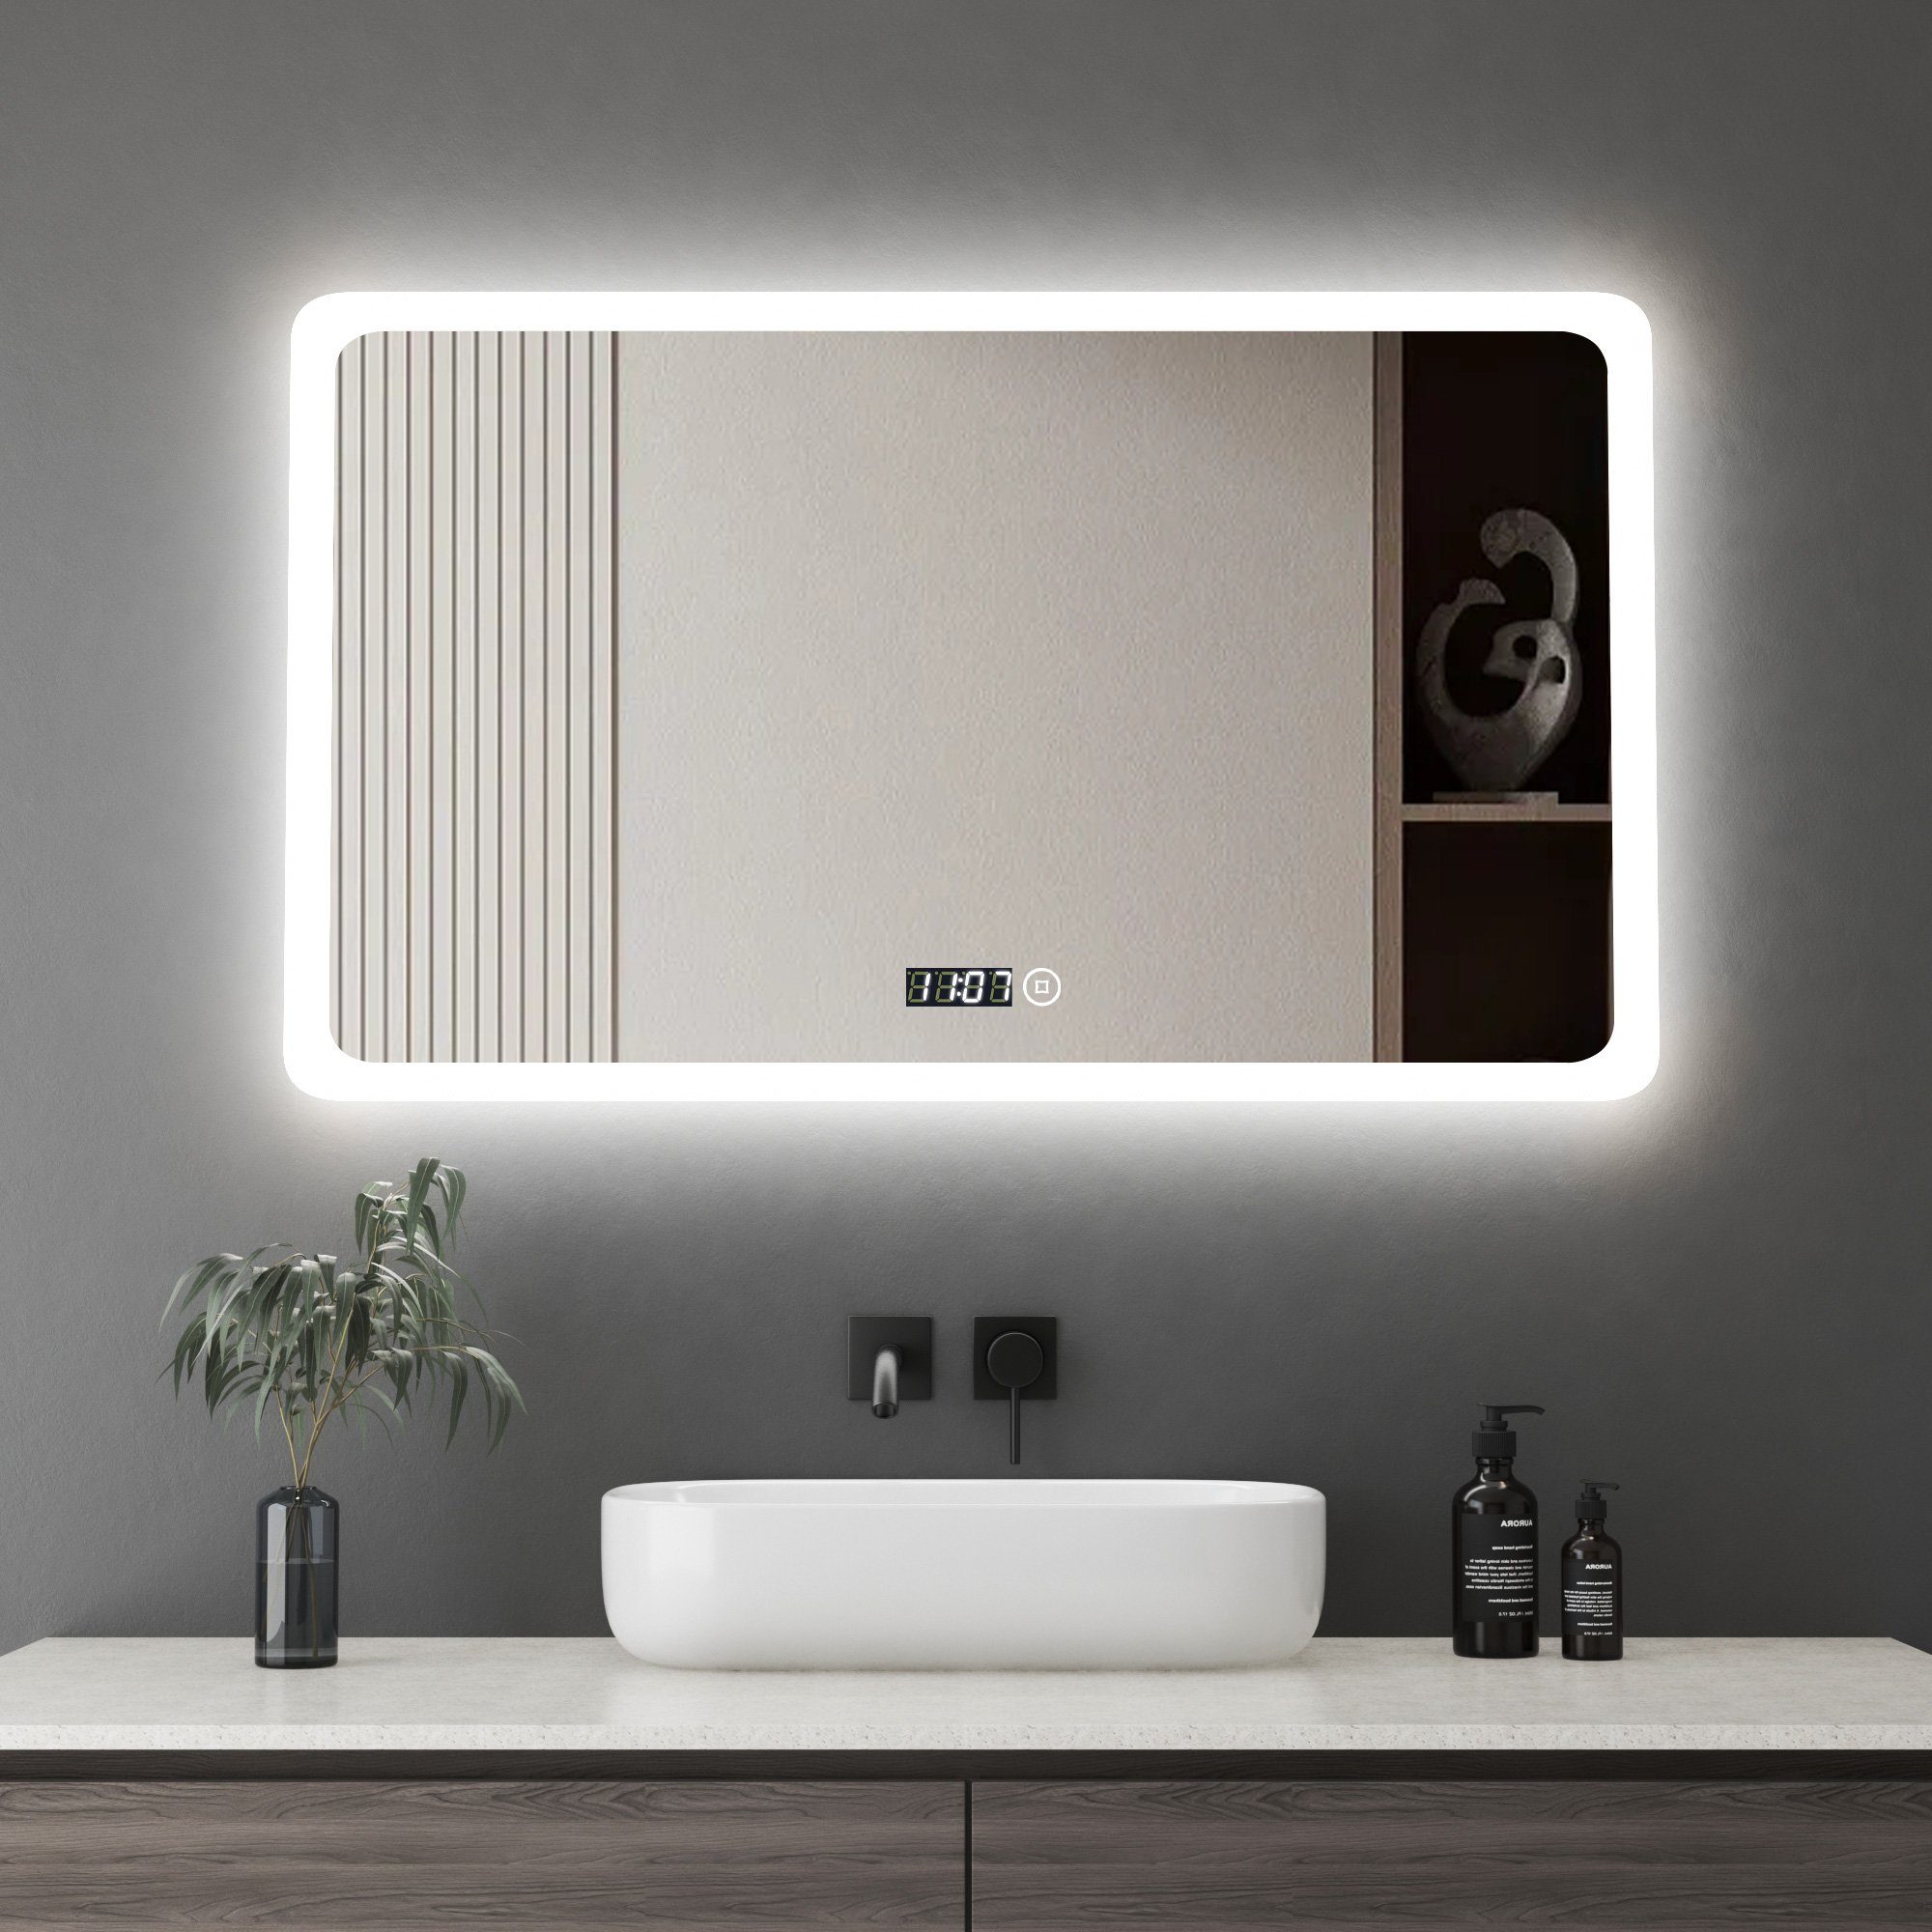 WDWRITTI Badspiegel Led Touch Uhr 100x60 cm Wandspiegel Badezimmerspiegel  mit beleuchtung (Bad Led Spiegel Wandschalter, Speicherfunktion, Helligkeit  dimmbar, 3 Lichtfarbe), 6500K, 4000K, 3000K, energiesparender